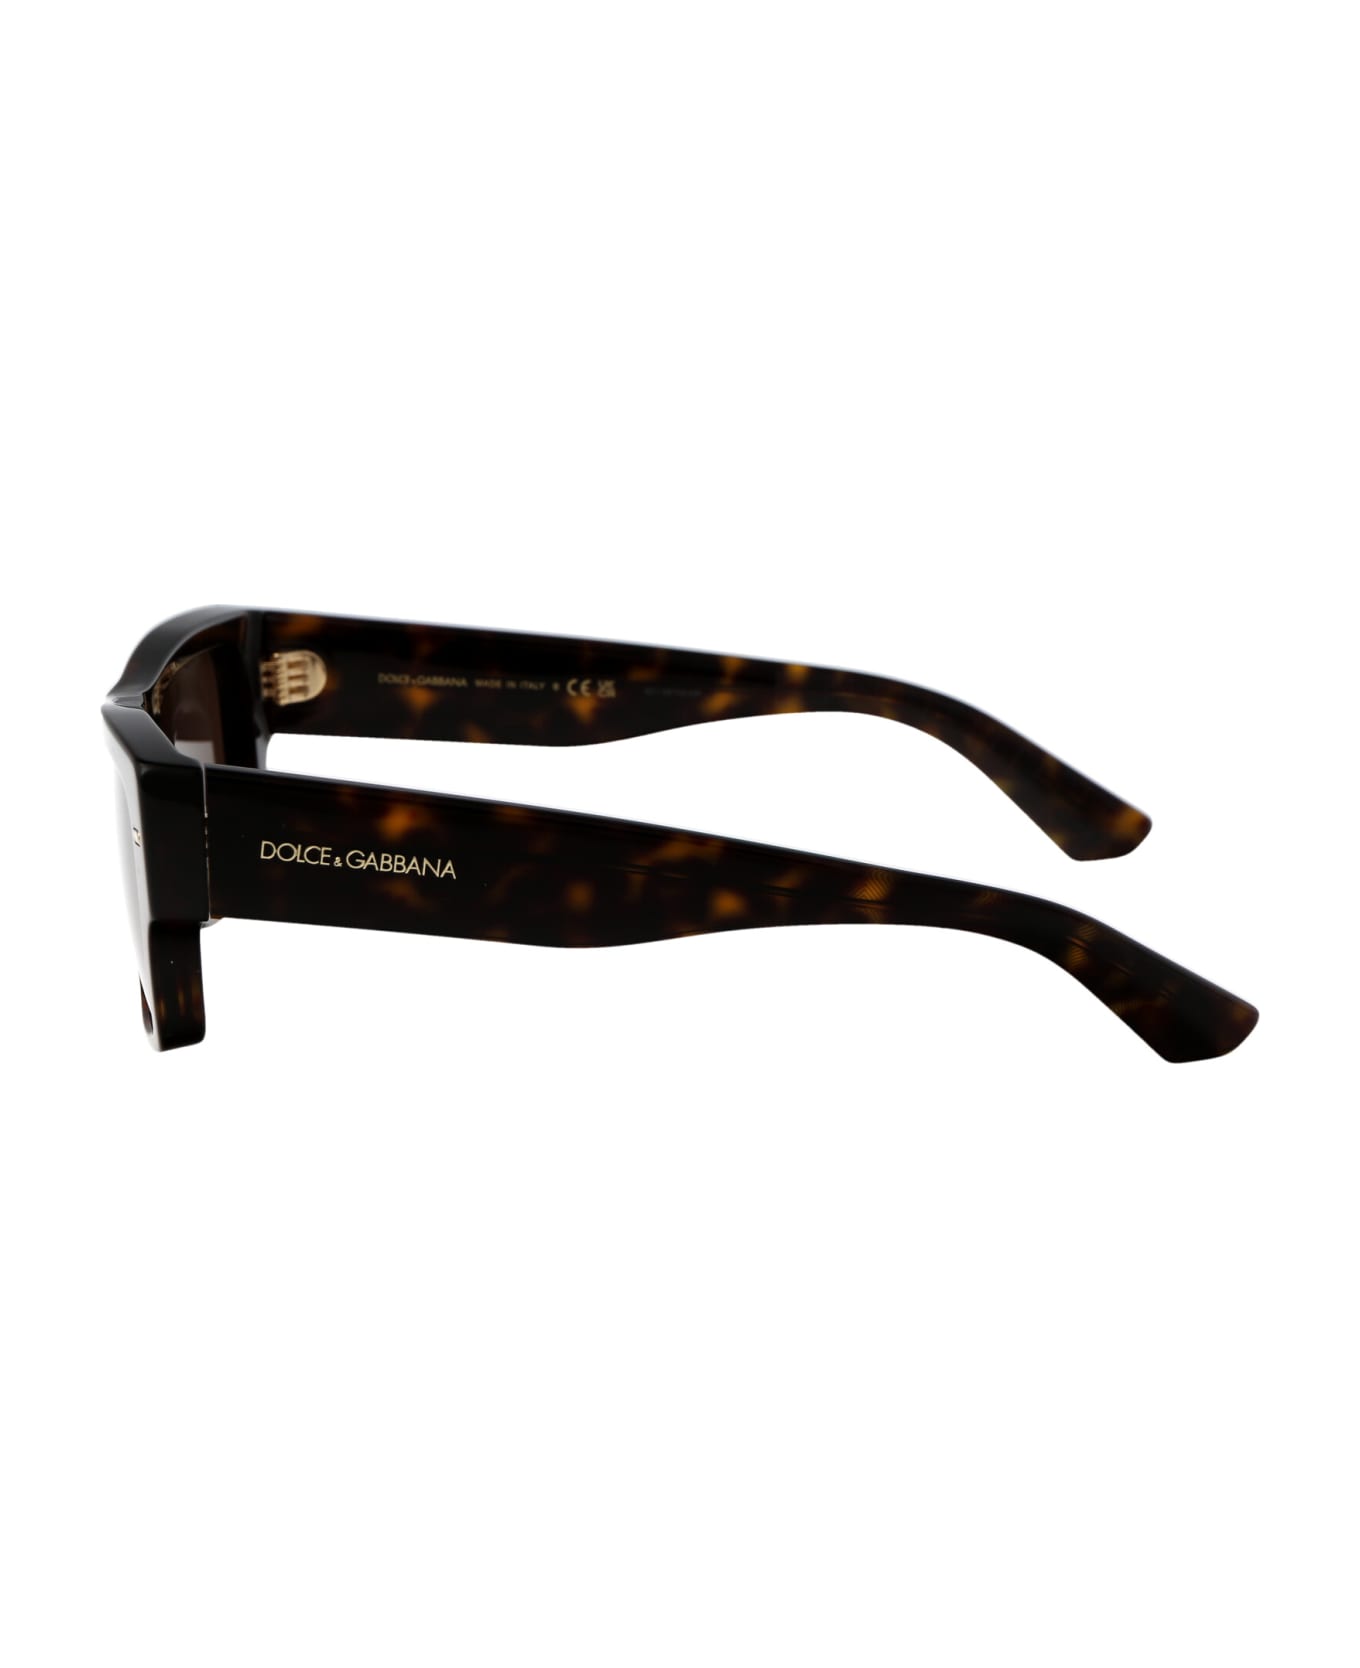 Dolce & Gabbana Eyewear 0dg4451 Sunglasses - 502/73 HAVANA